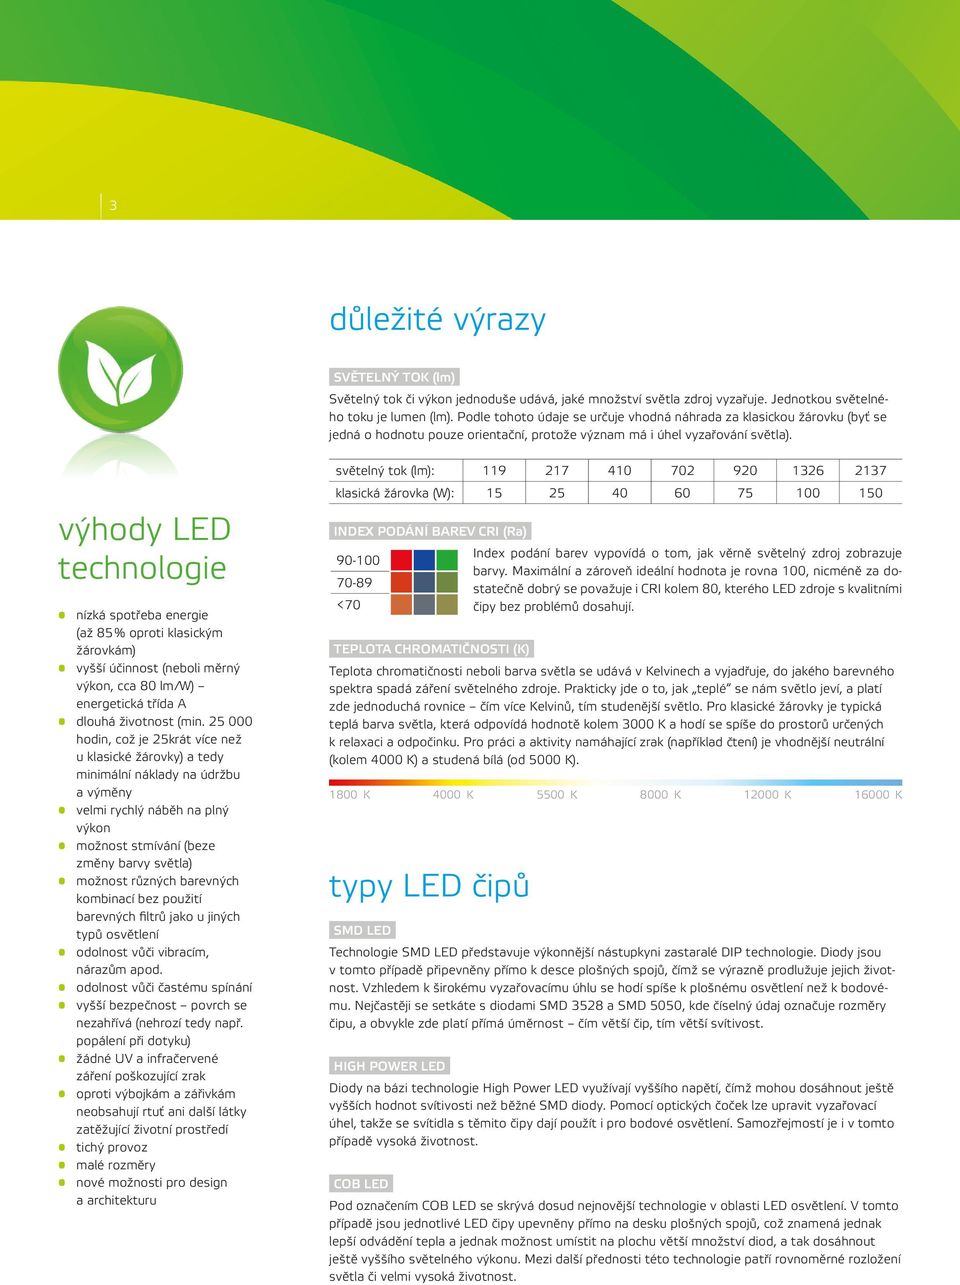 výhody LED technologie nízká spotřeba energie (až 85 % oproti klasickým žárovkám) vyšší účinnost (neboli měrný výkon, cca 80 lm/w) energetická třída A dlouhá životnost (min.